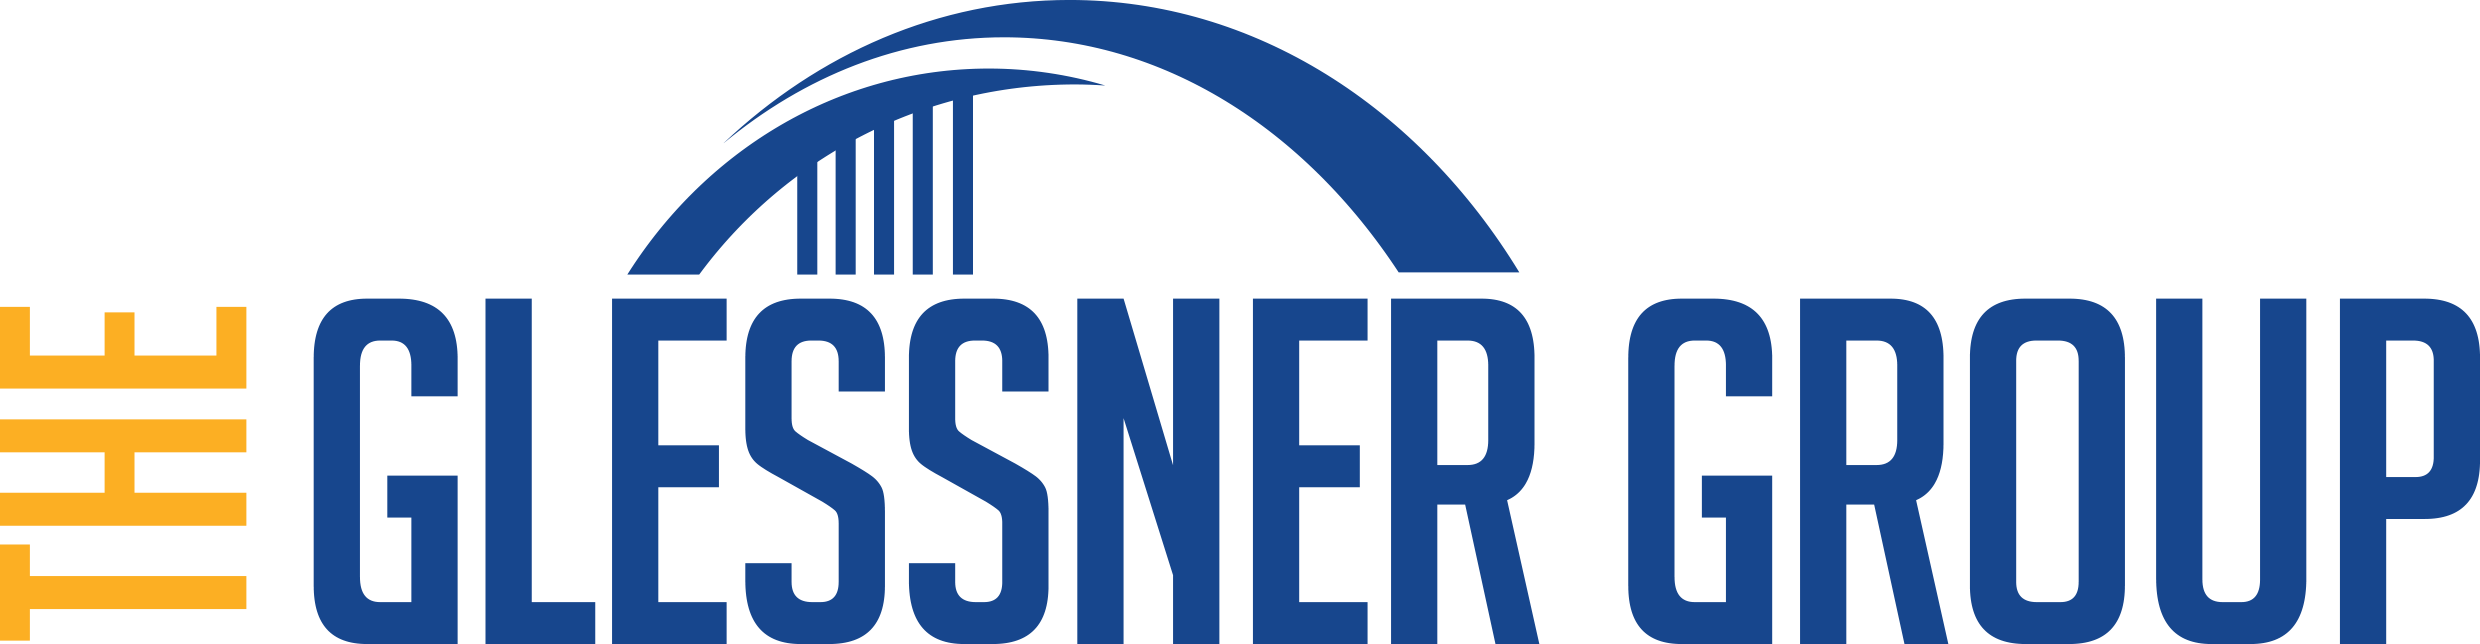 Glessner Wharton & Andrews Insurance LLC logo